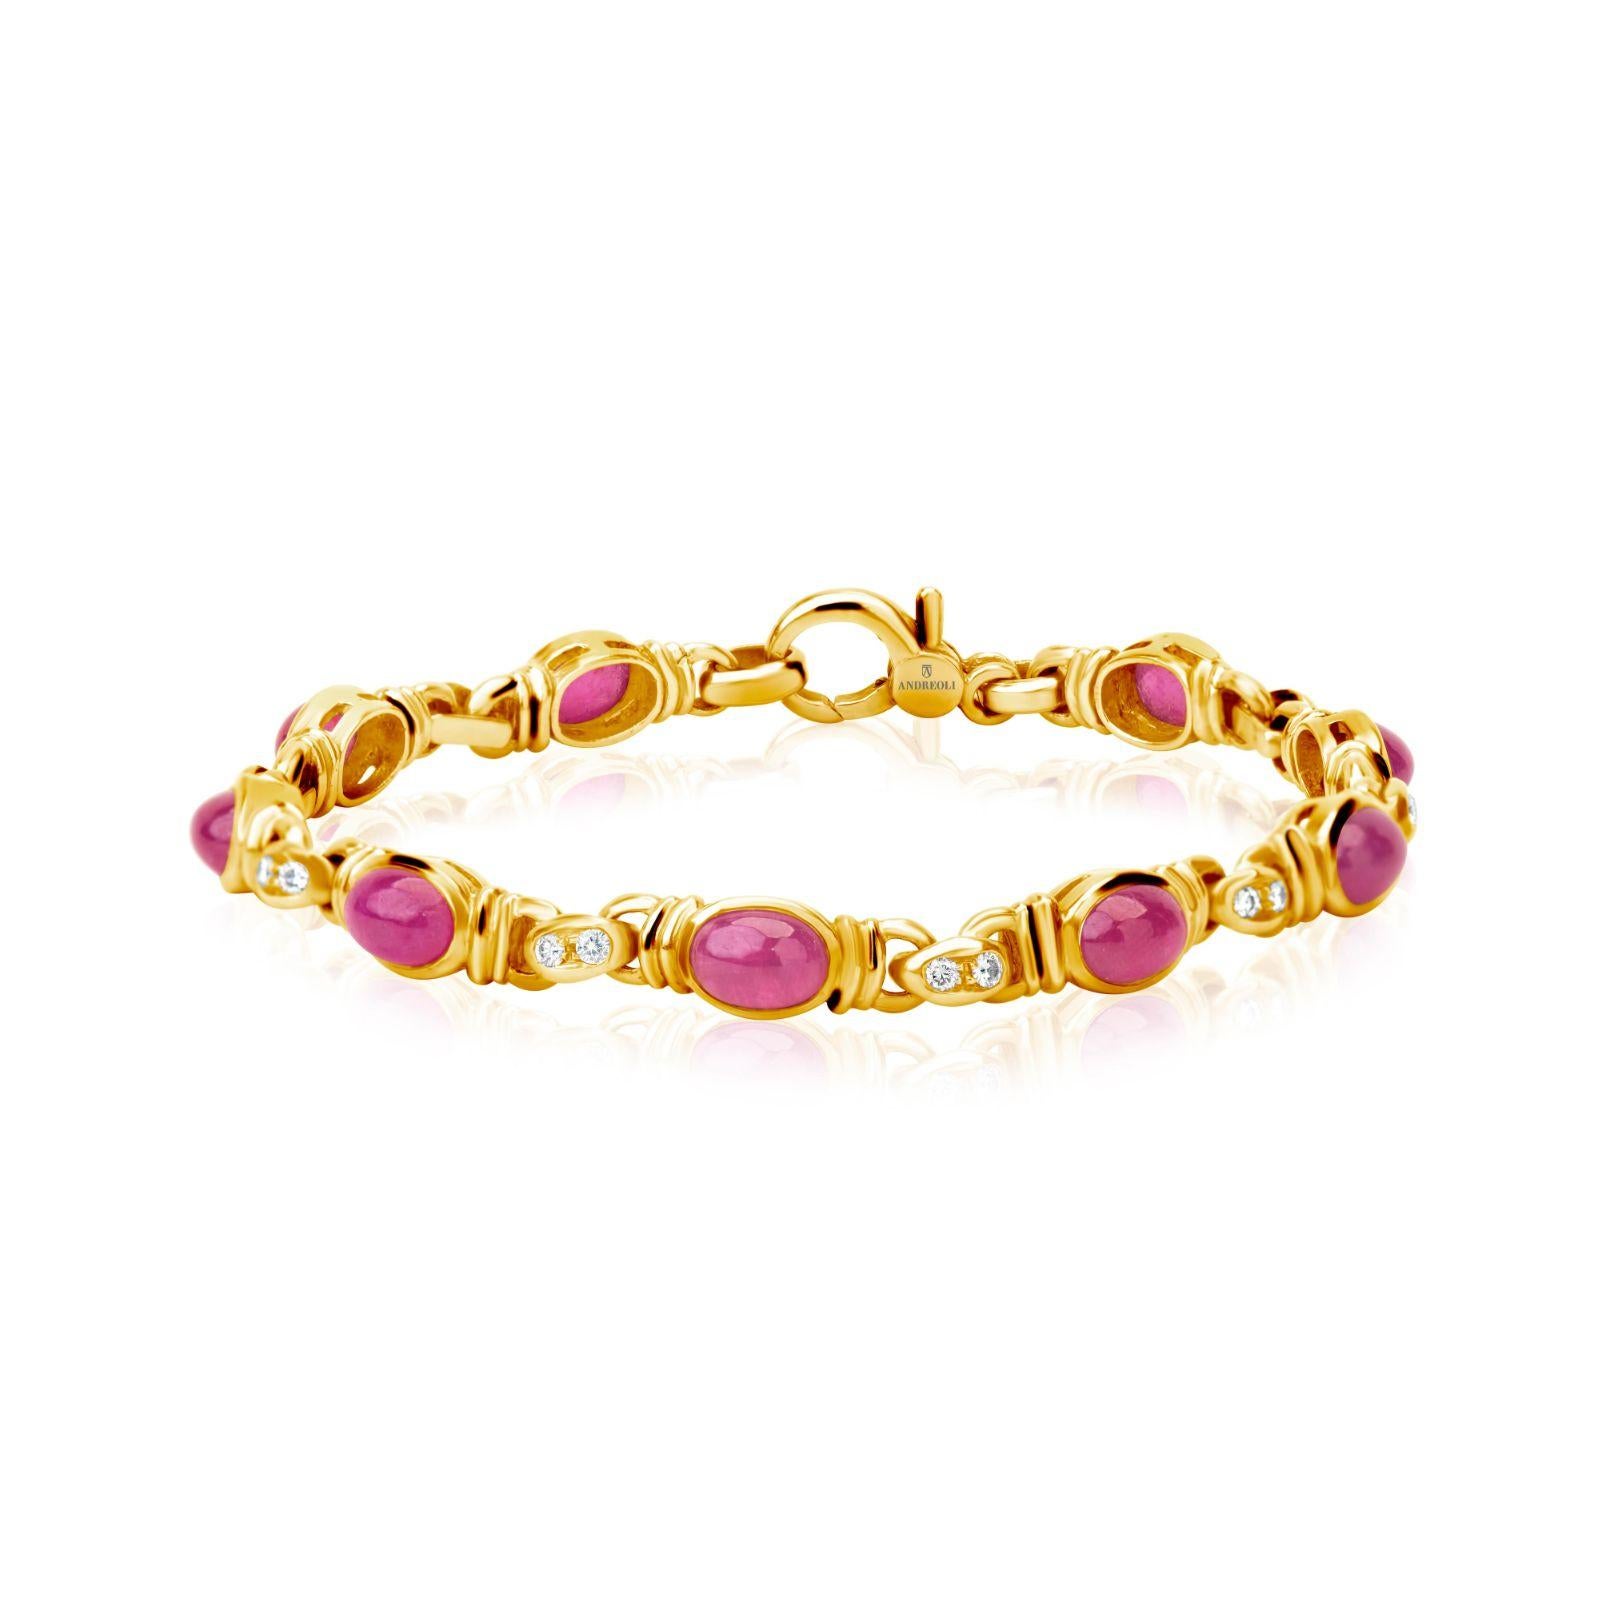 Andreoli Bracelet en or jaune 18 carats avec rubis et diamants

Ce bracelet présente les caractéristiques suivantes
- Rubis de 6,90 carats
- Diamant de 0,30 carat
- 20.76 Grammes Or Jaune 18K
- Fabriqué en Italie